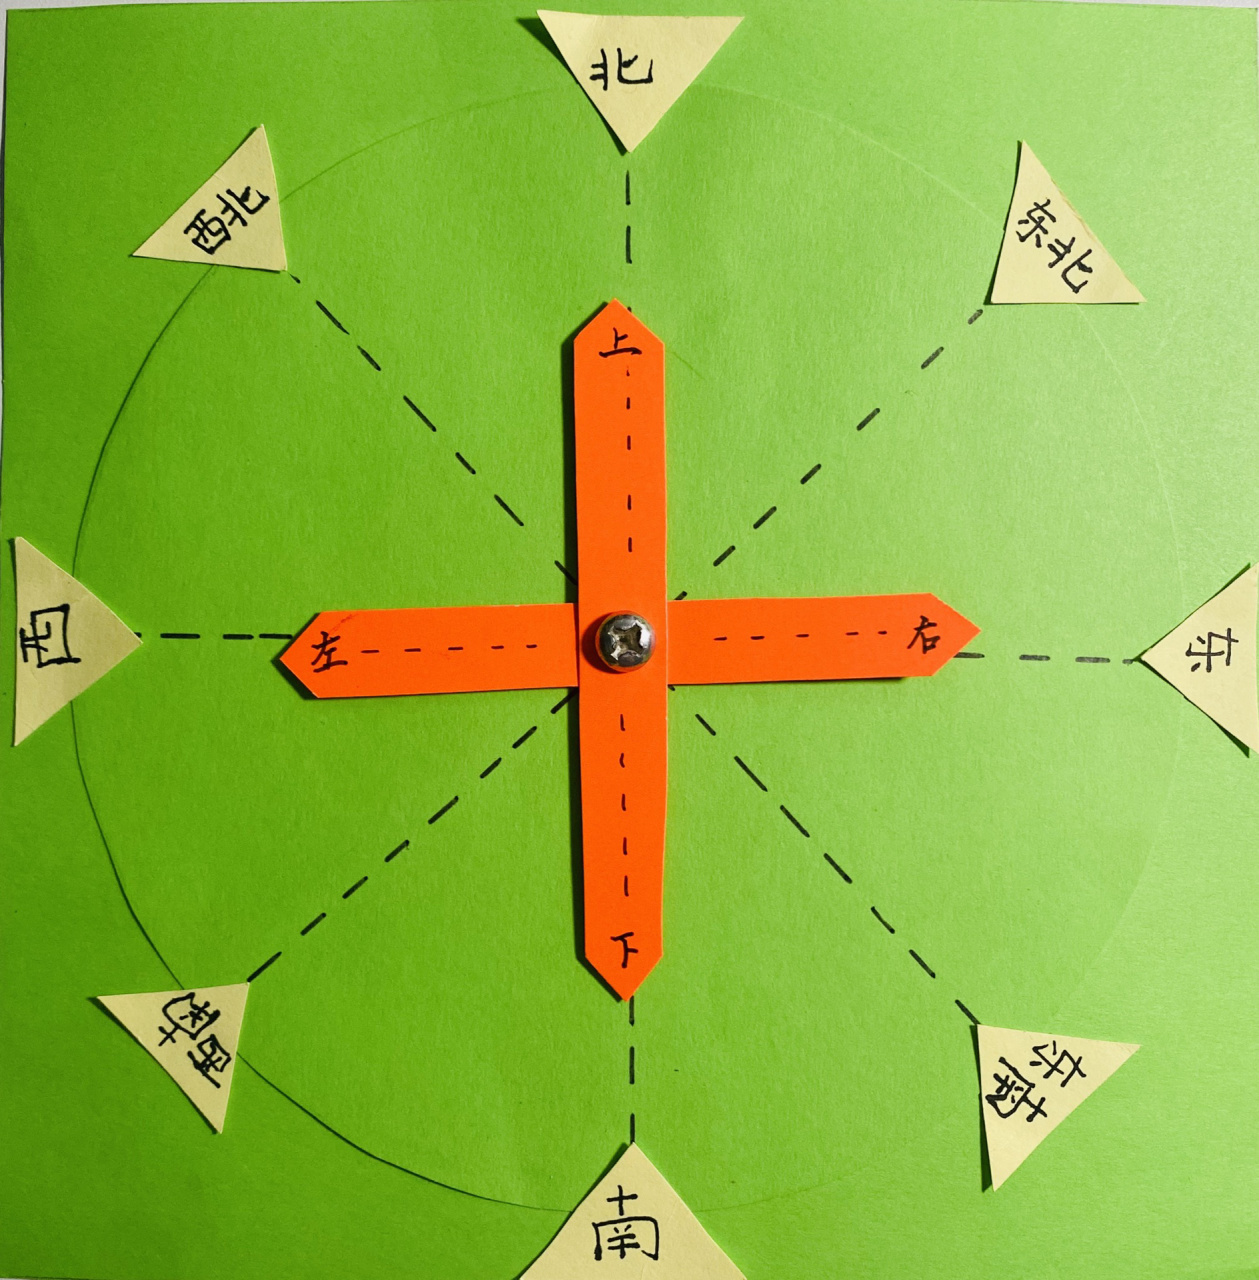 方向板制作(二年级) 固定箭头的是螺丝钉和螺帽